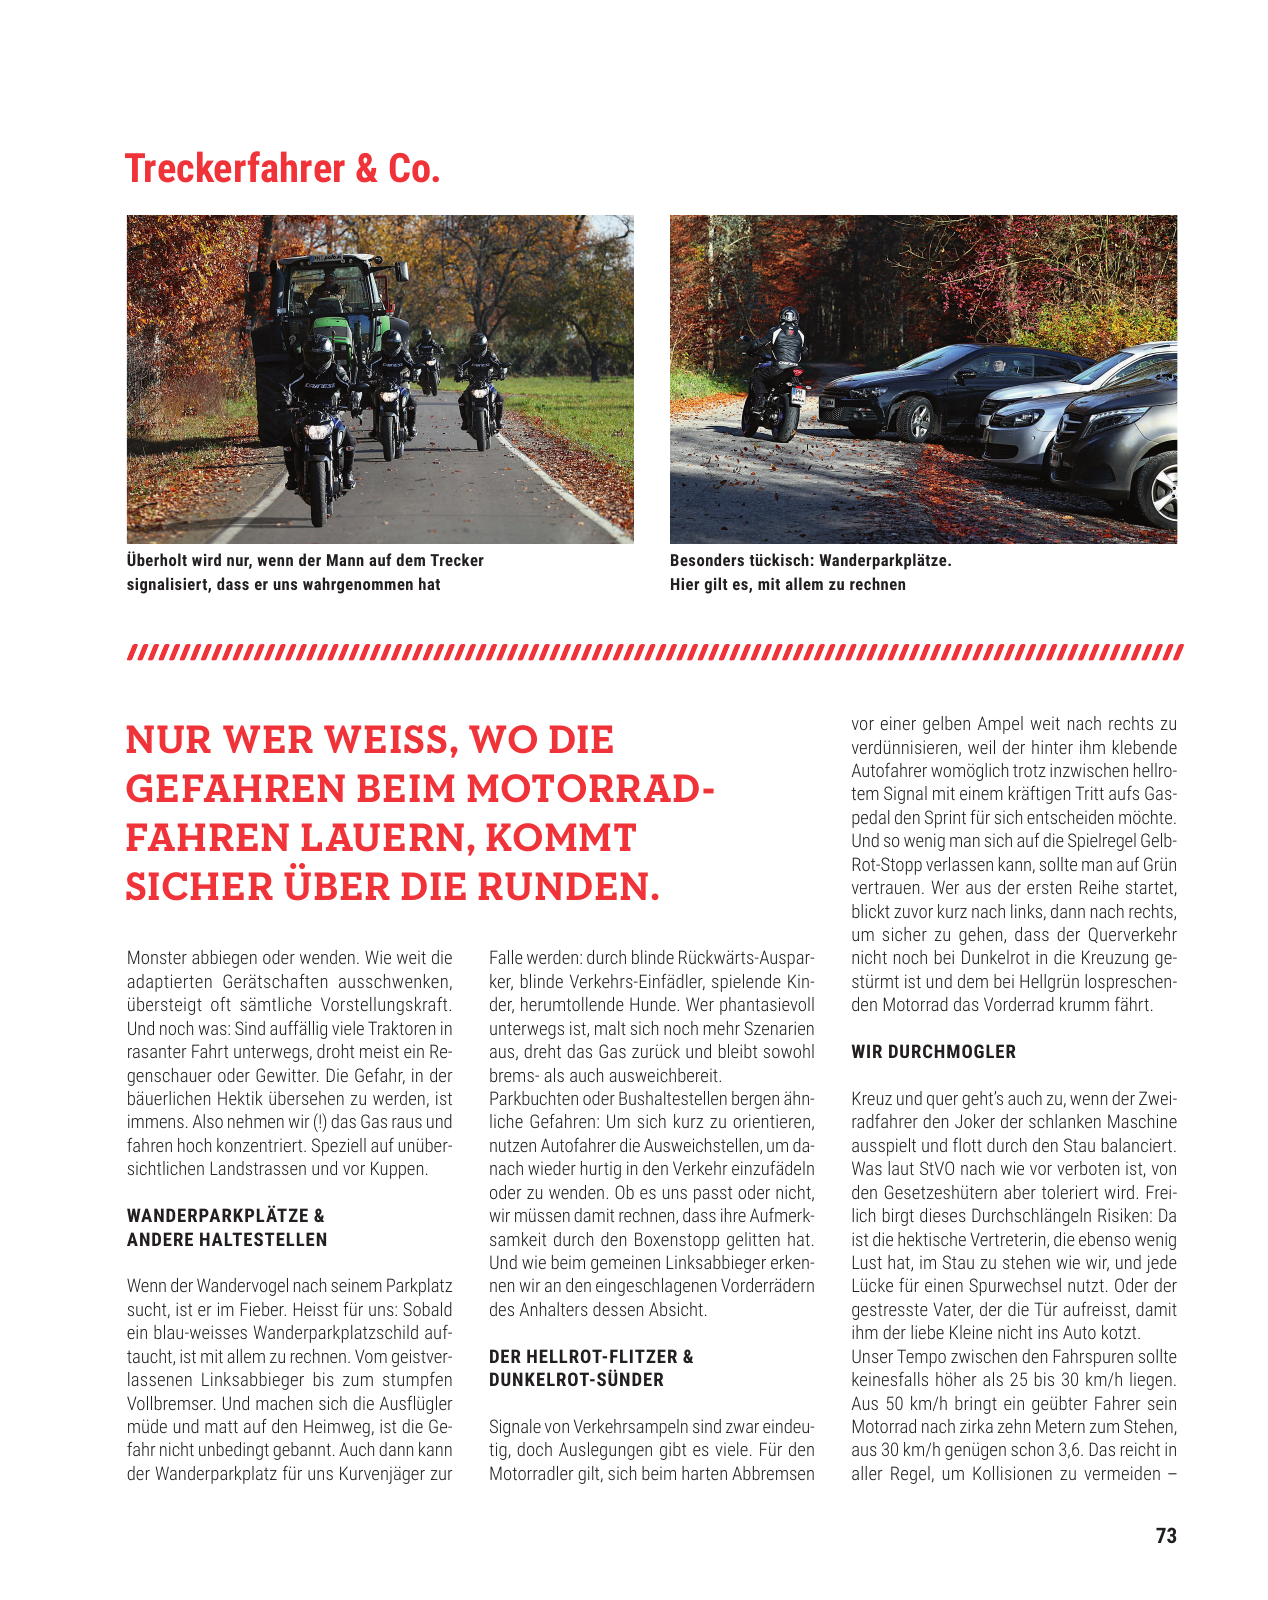 Vorschau polo-motorrad-mach-dein-ding-ch-de-Q6N3ypgVk4 Seite 73